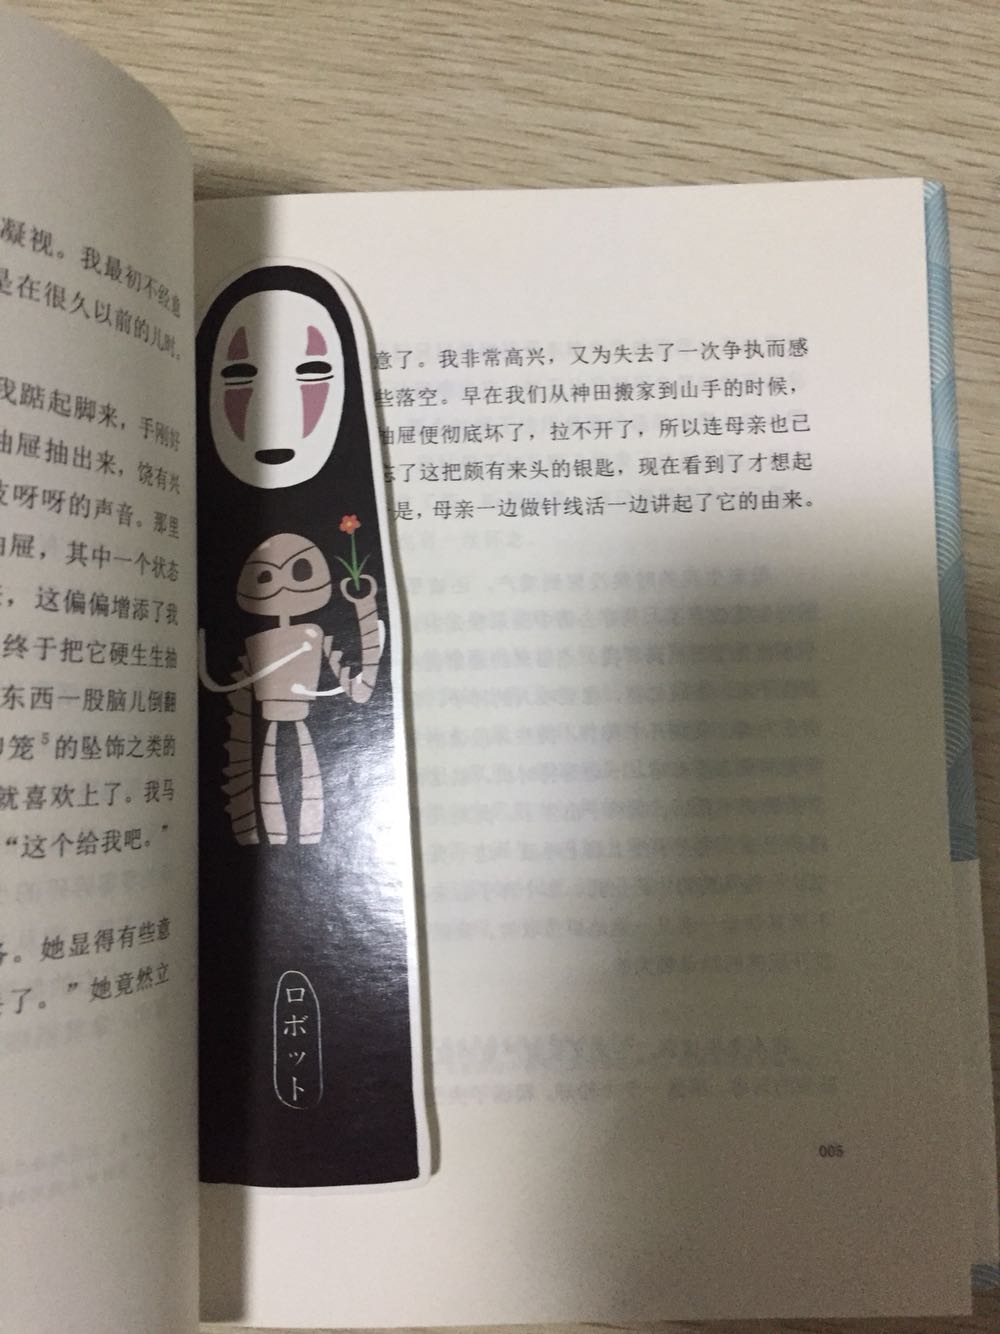 比较喜欢日本文学，这部小说文风平和恬淡，适合下午无聊随手翻翻